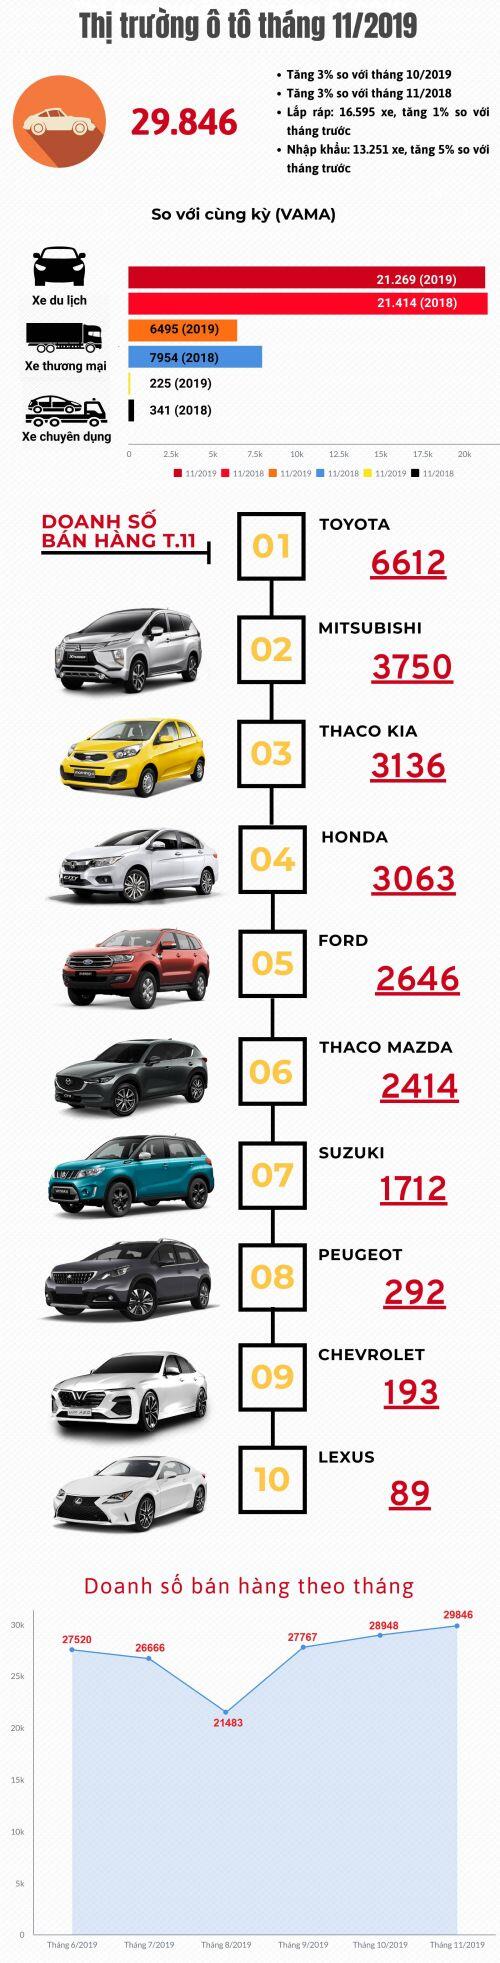 [Infographic] Thị trường ô tô tháng 11/2019: Lấy đà cho tháng cuối năm